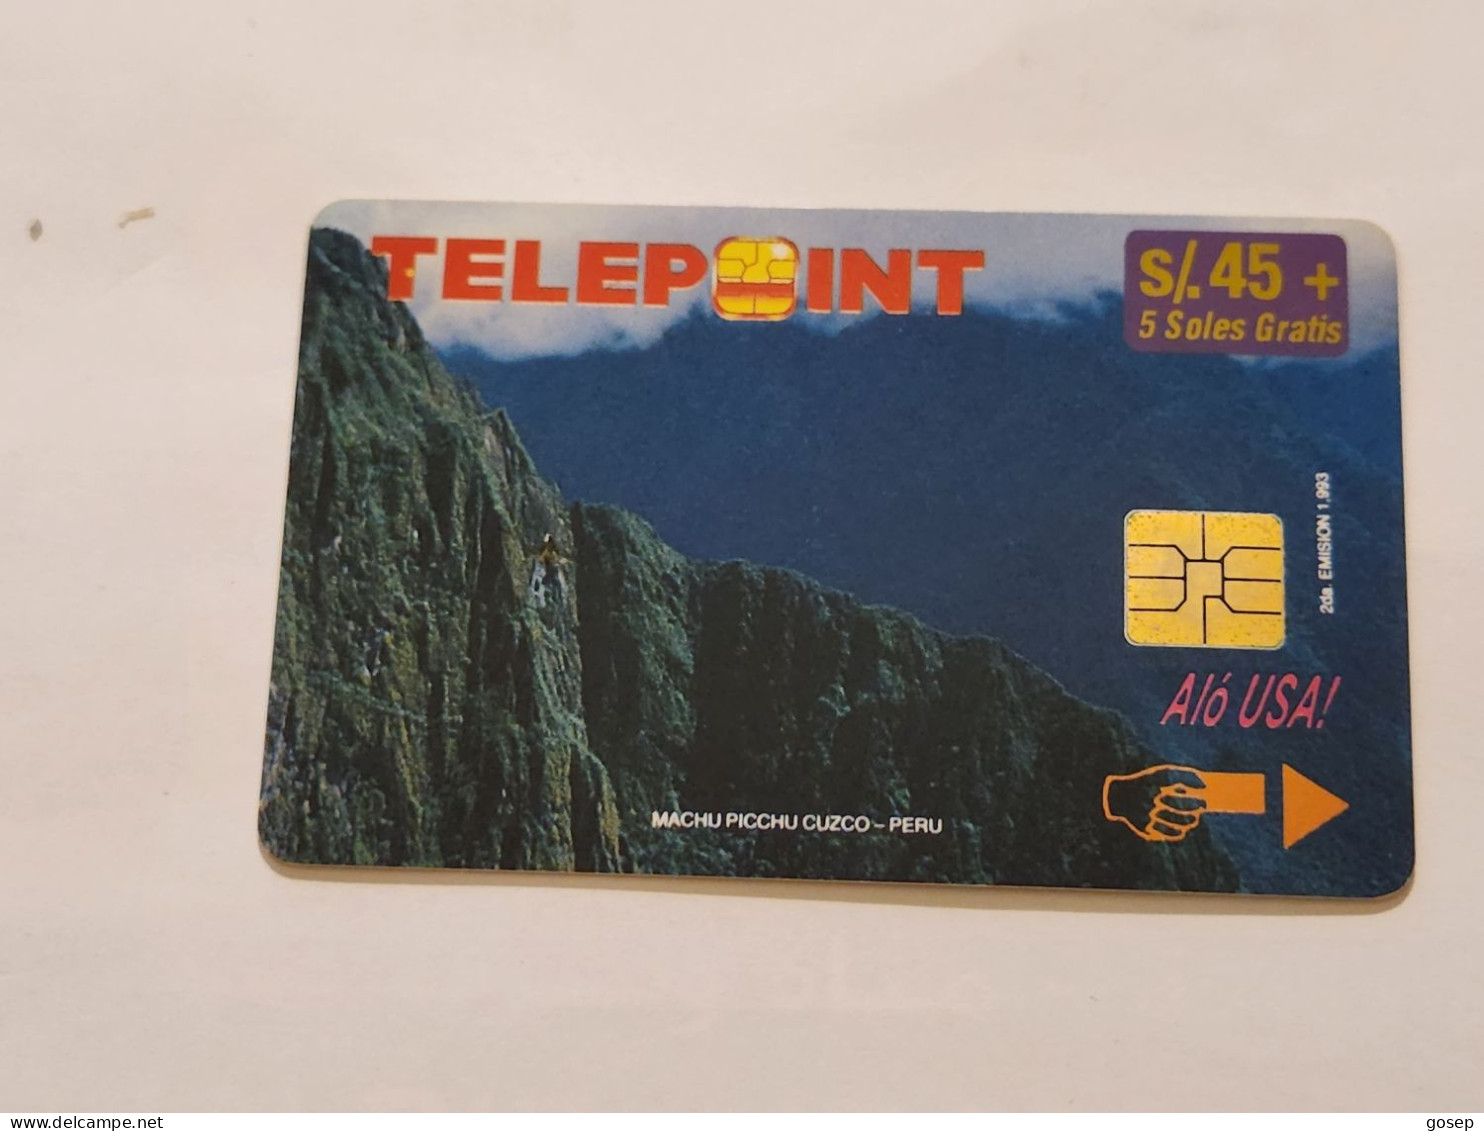 PERU-(PER-TE-33)-Machu Picchu Puzzle-Reverse-2/4(4)(s/45)(PTD001/B2-EX8500)-(tirage-8.500)-used Card+1cars Prepiad,free - Perú